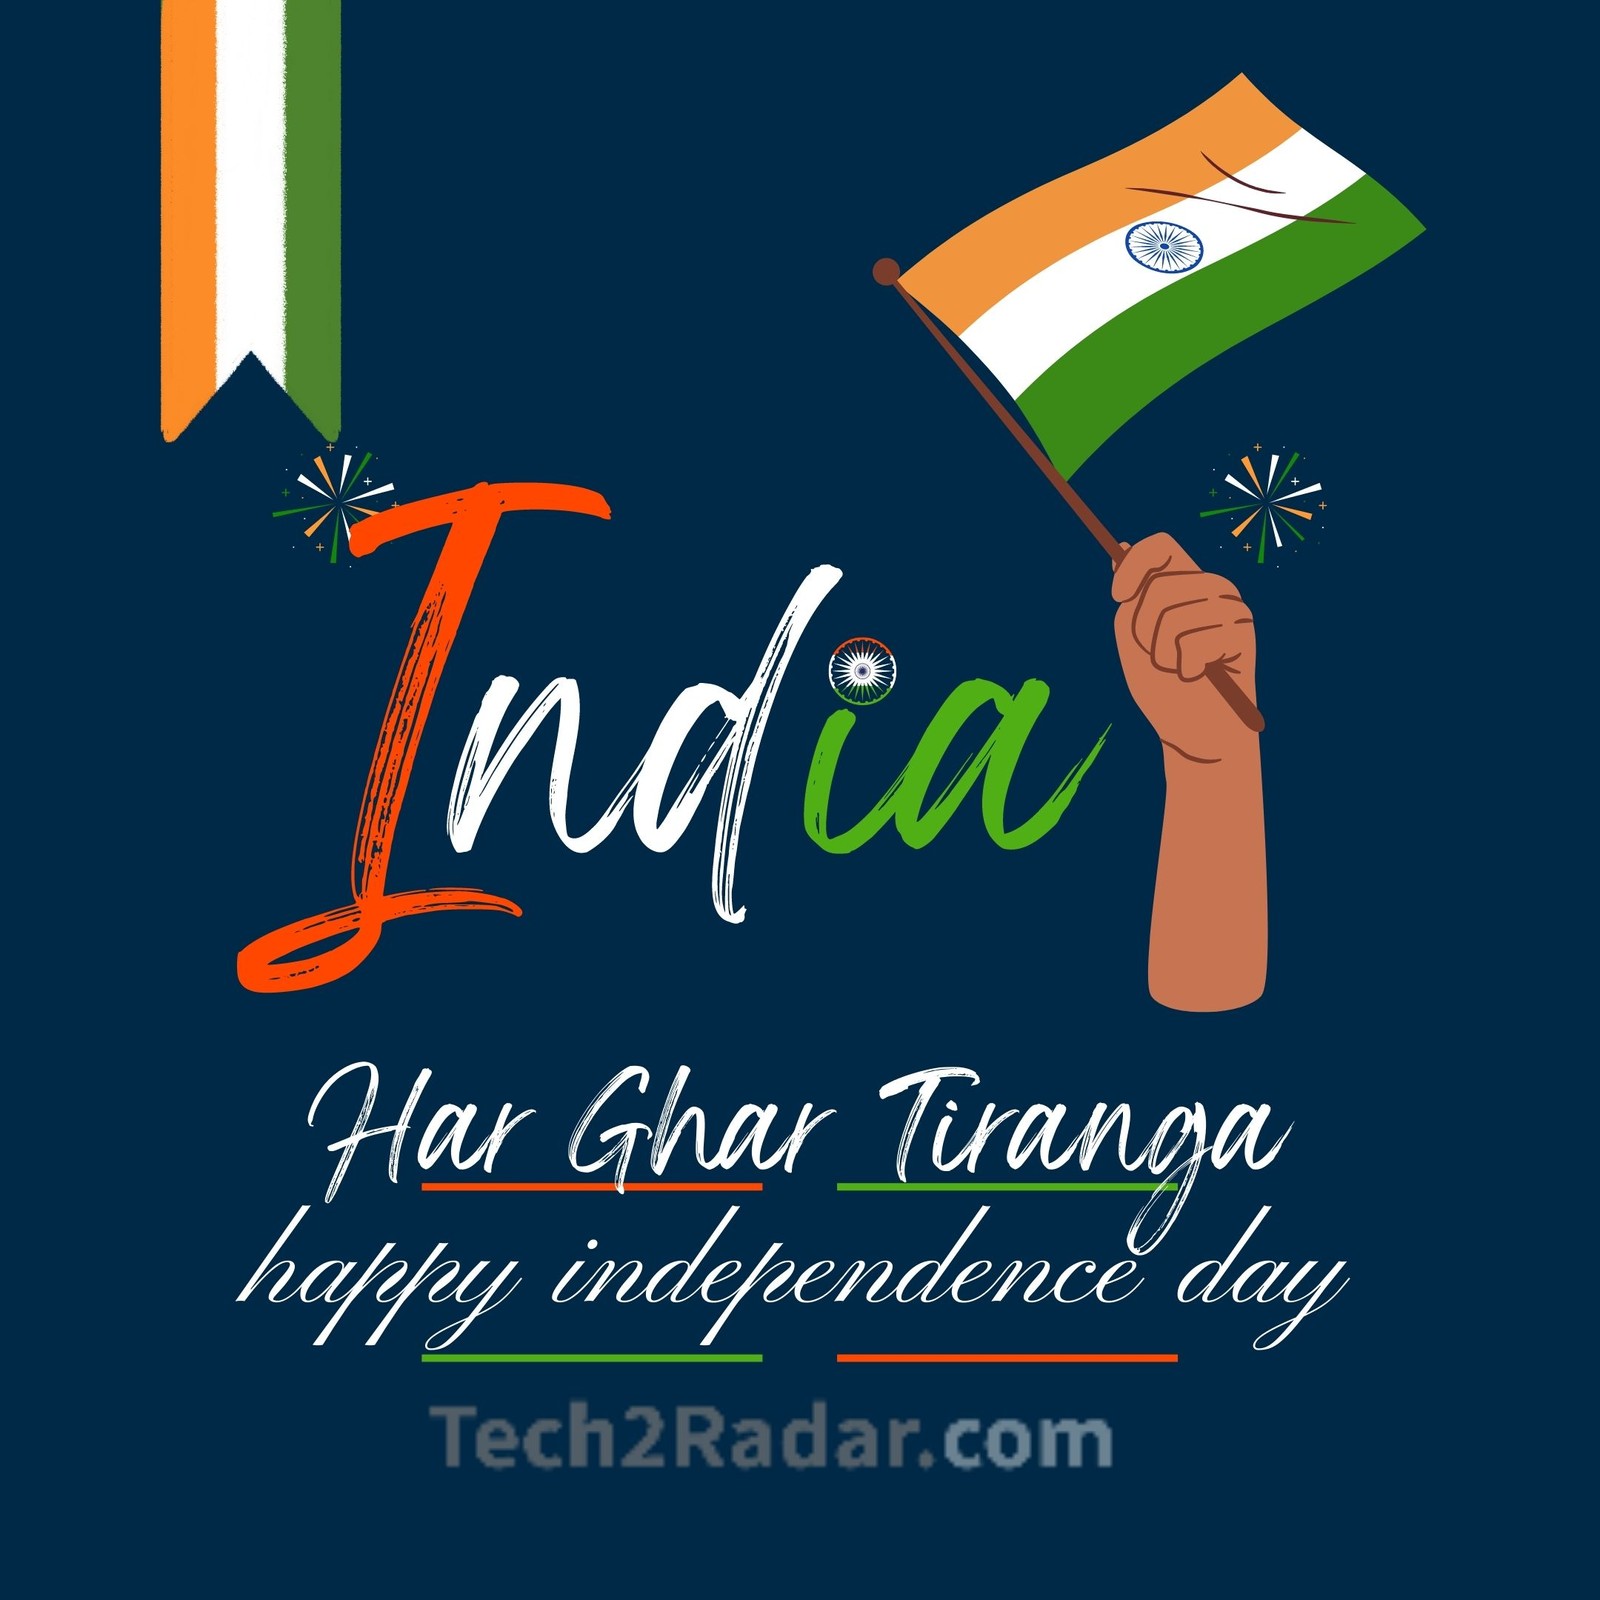 happy Independence Day azadikaamritmahotsav2022 independenceday2022  harghartiranga